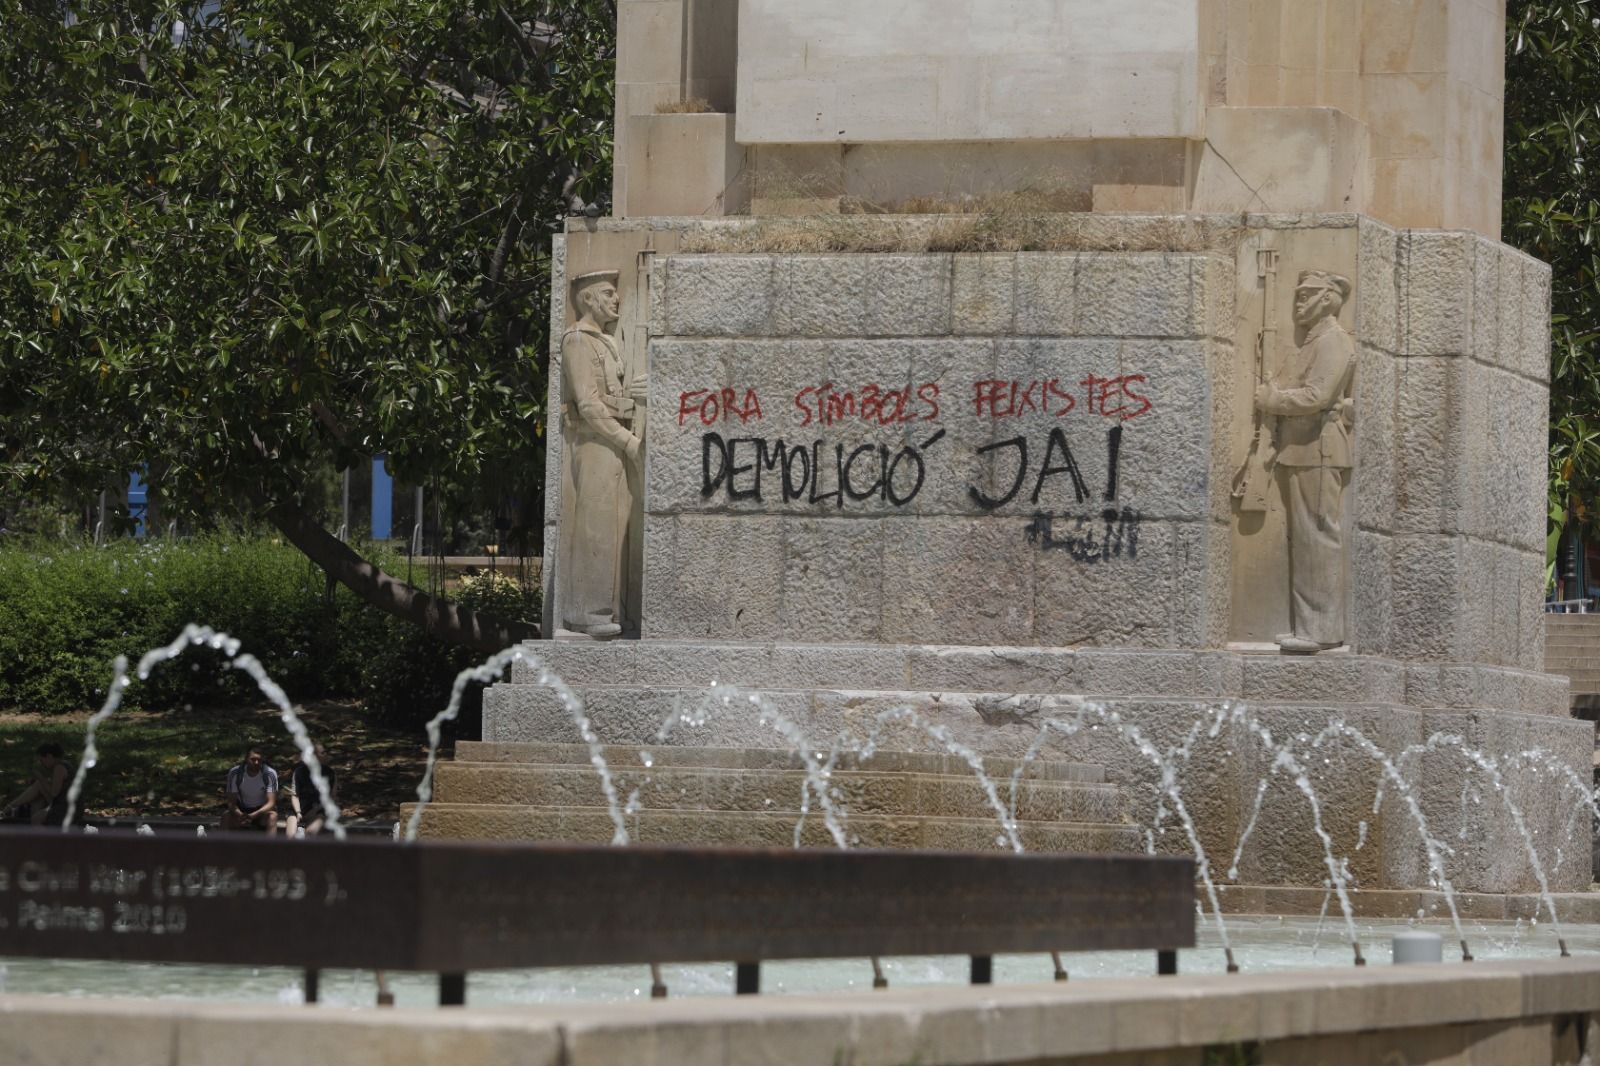 Aparecen pintadas vandálicas contra el monumento de Sa Feixina